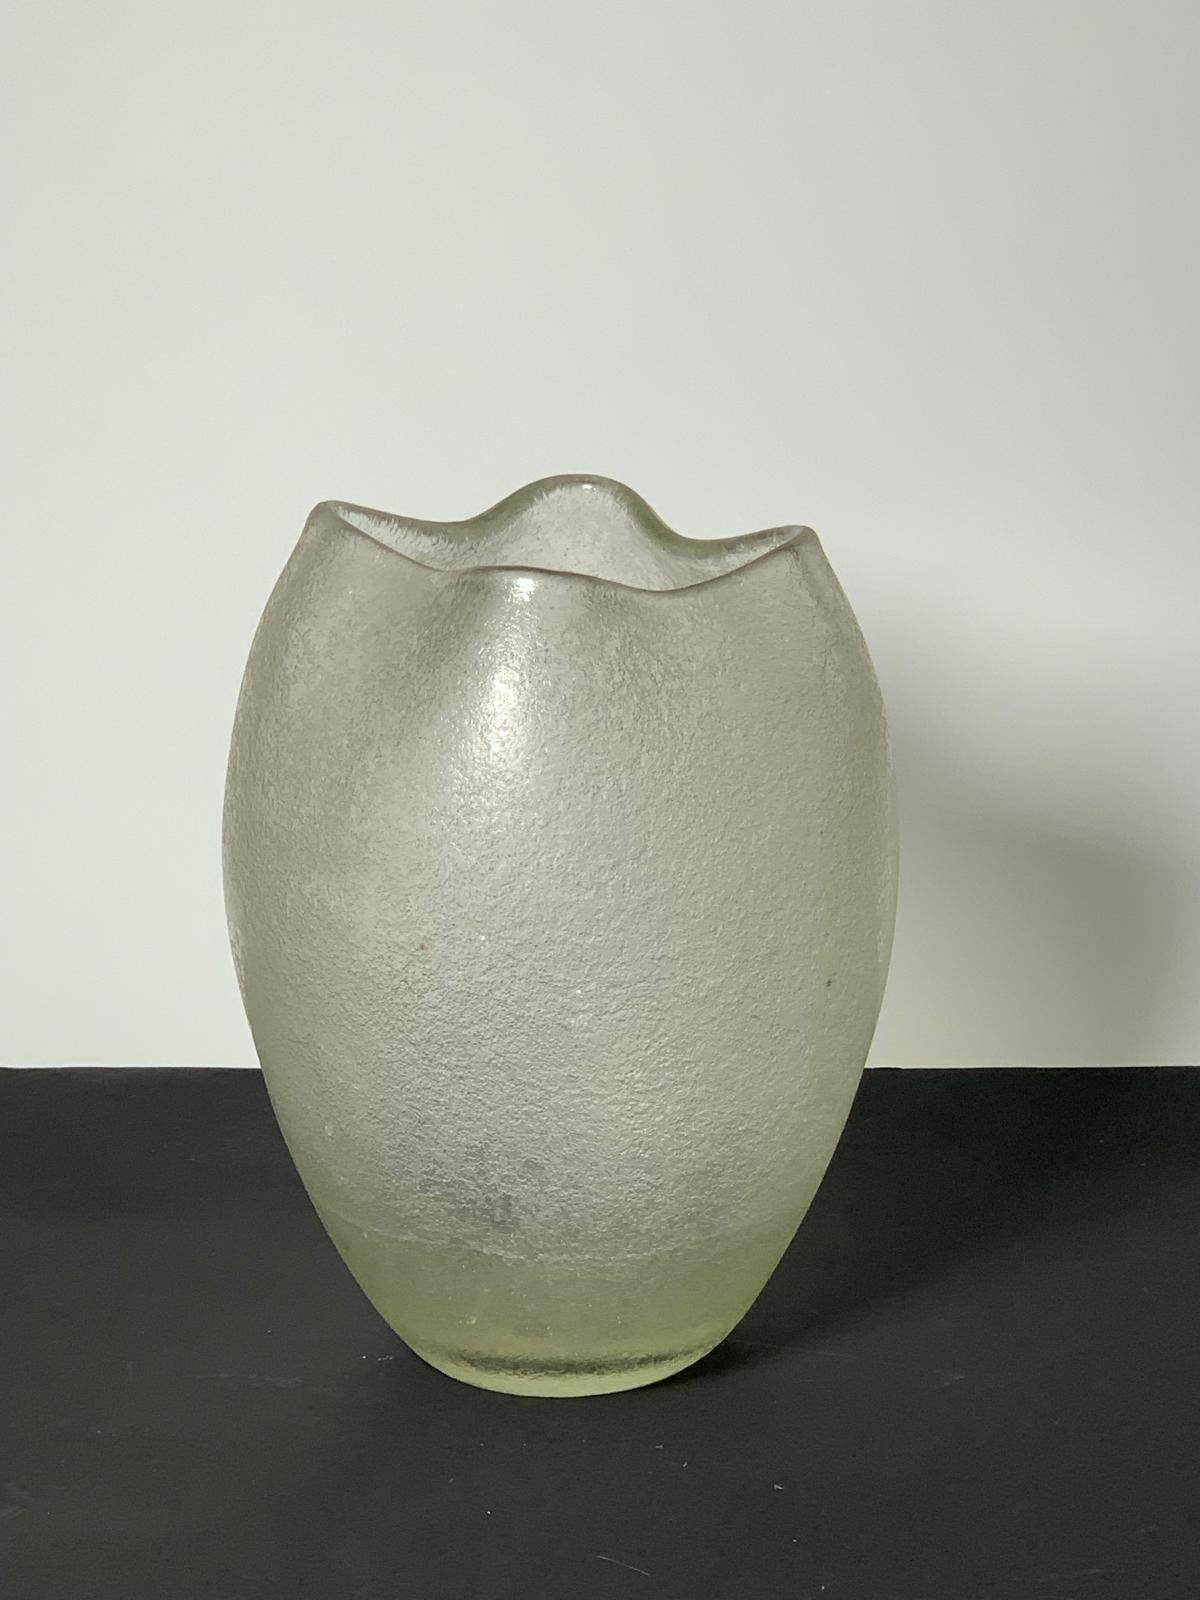 Murano glass vase from the Corroso series designed by Flavio Poli for Seguso in the 1940s.

Biography
Designer, businessman, ceramic artist. Born in Chioggia, he attended the Istituto d'Arte di Venezia and began work as a designer in ceramics. in